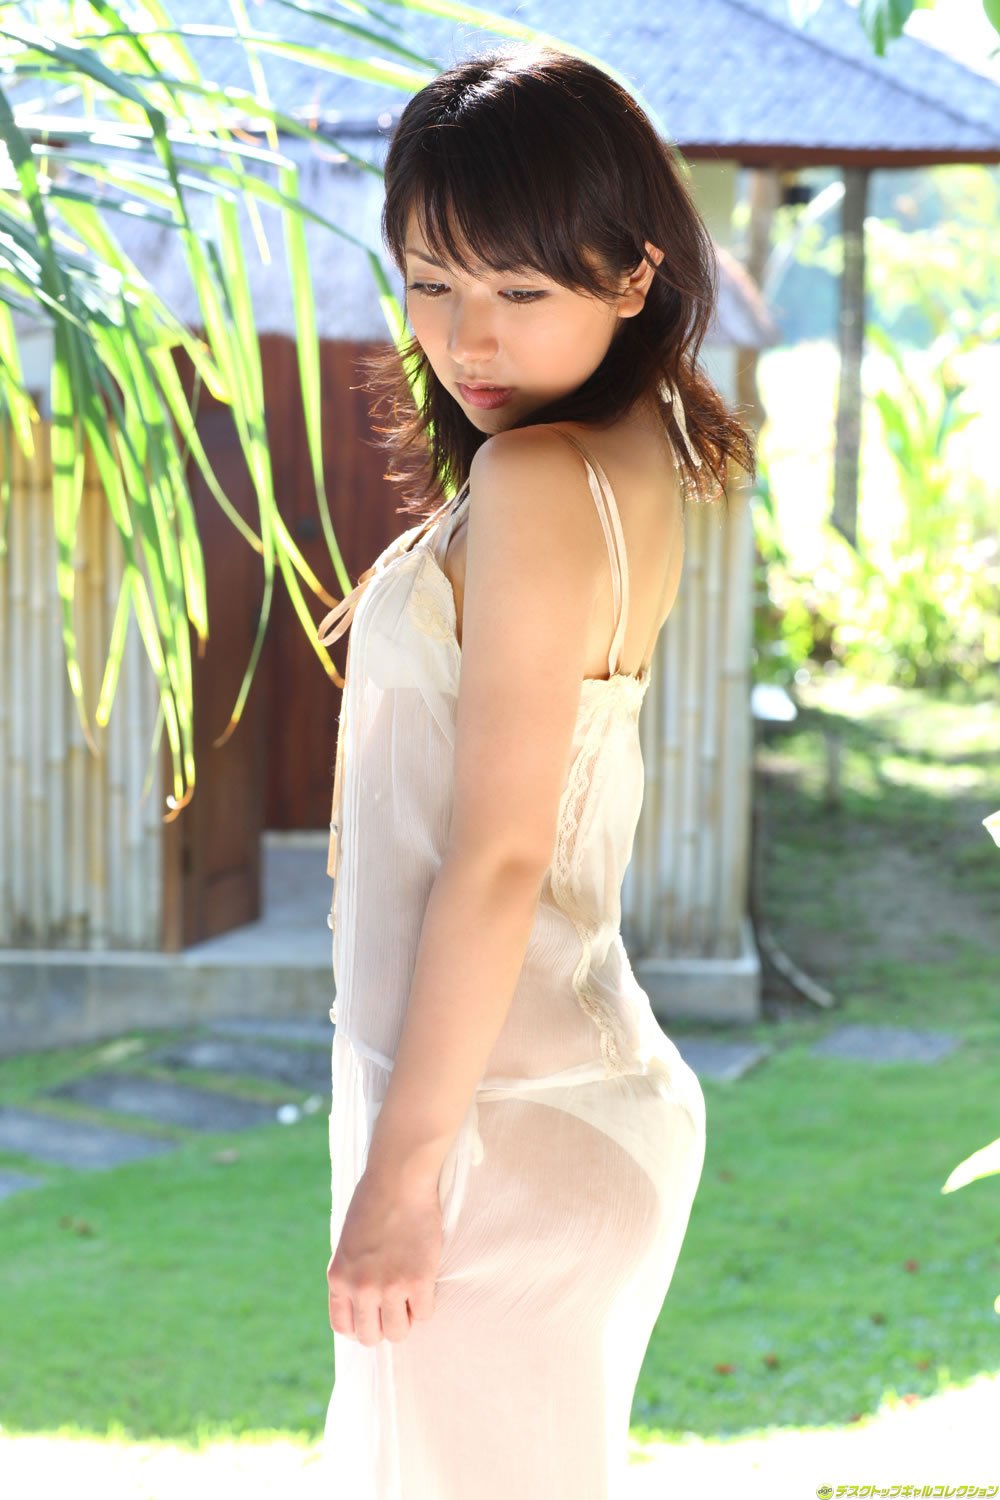 Atsumi Ishihara Sexy and Hottest Photos , Latest Pics